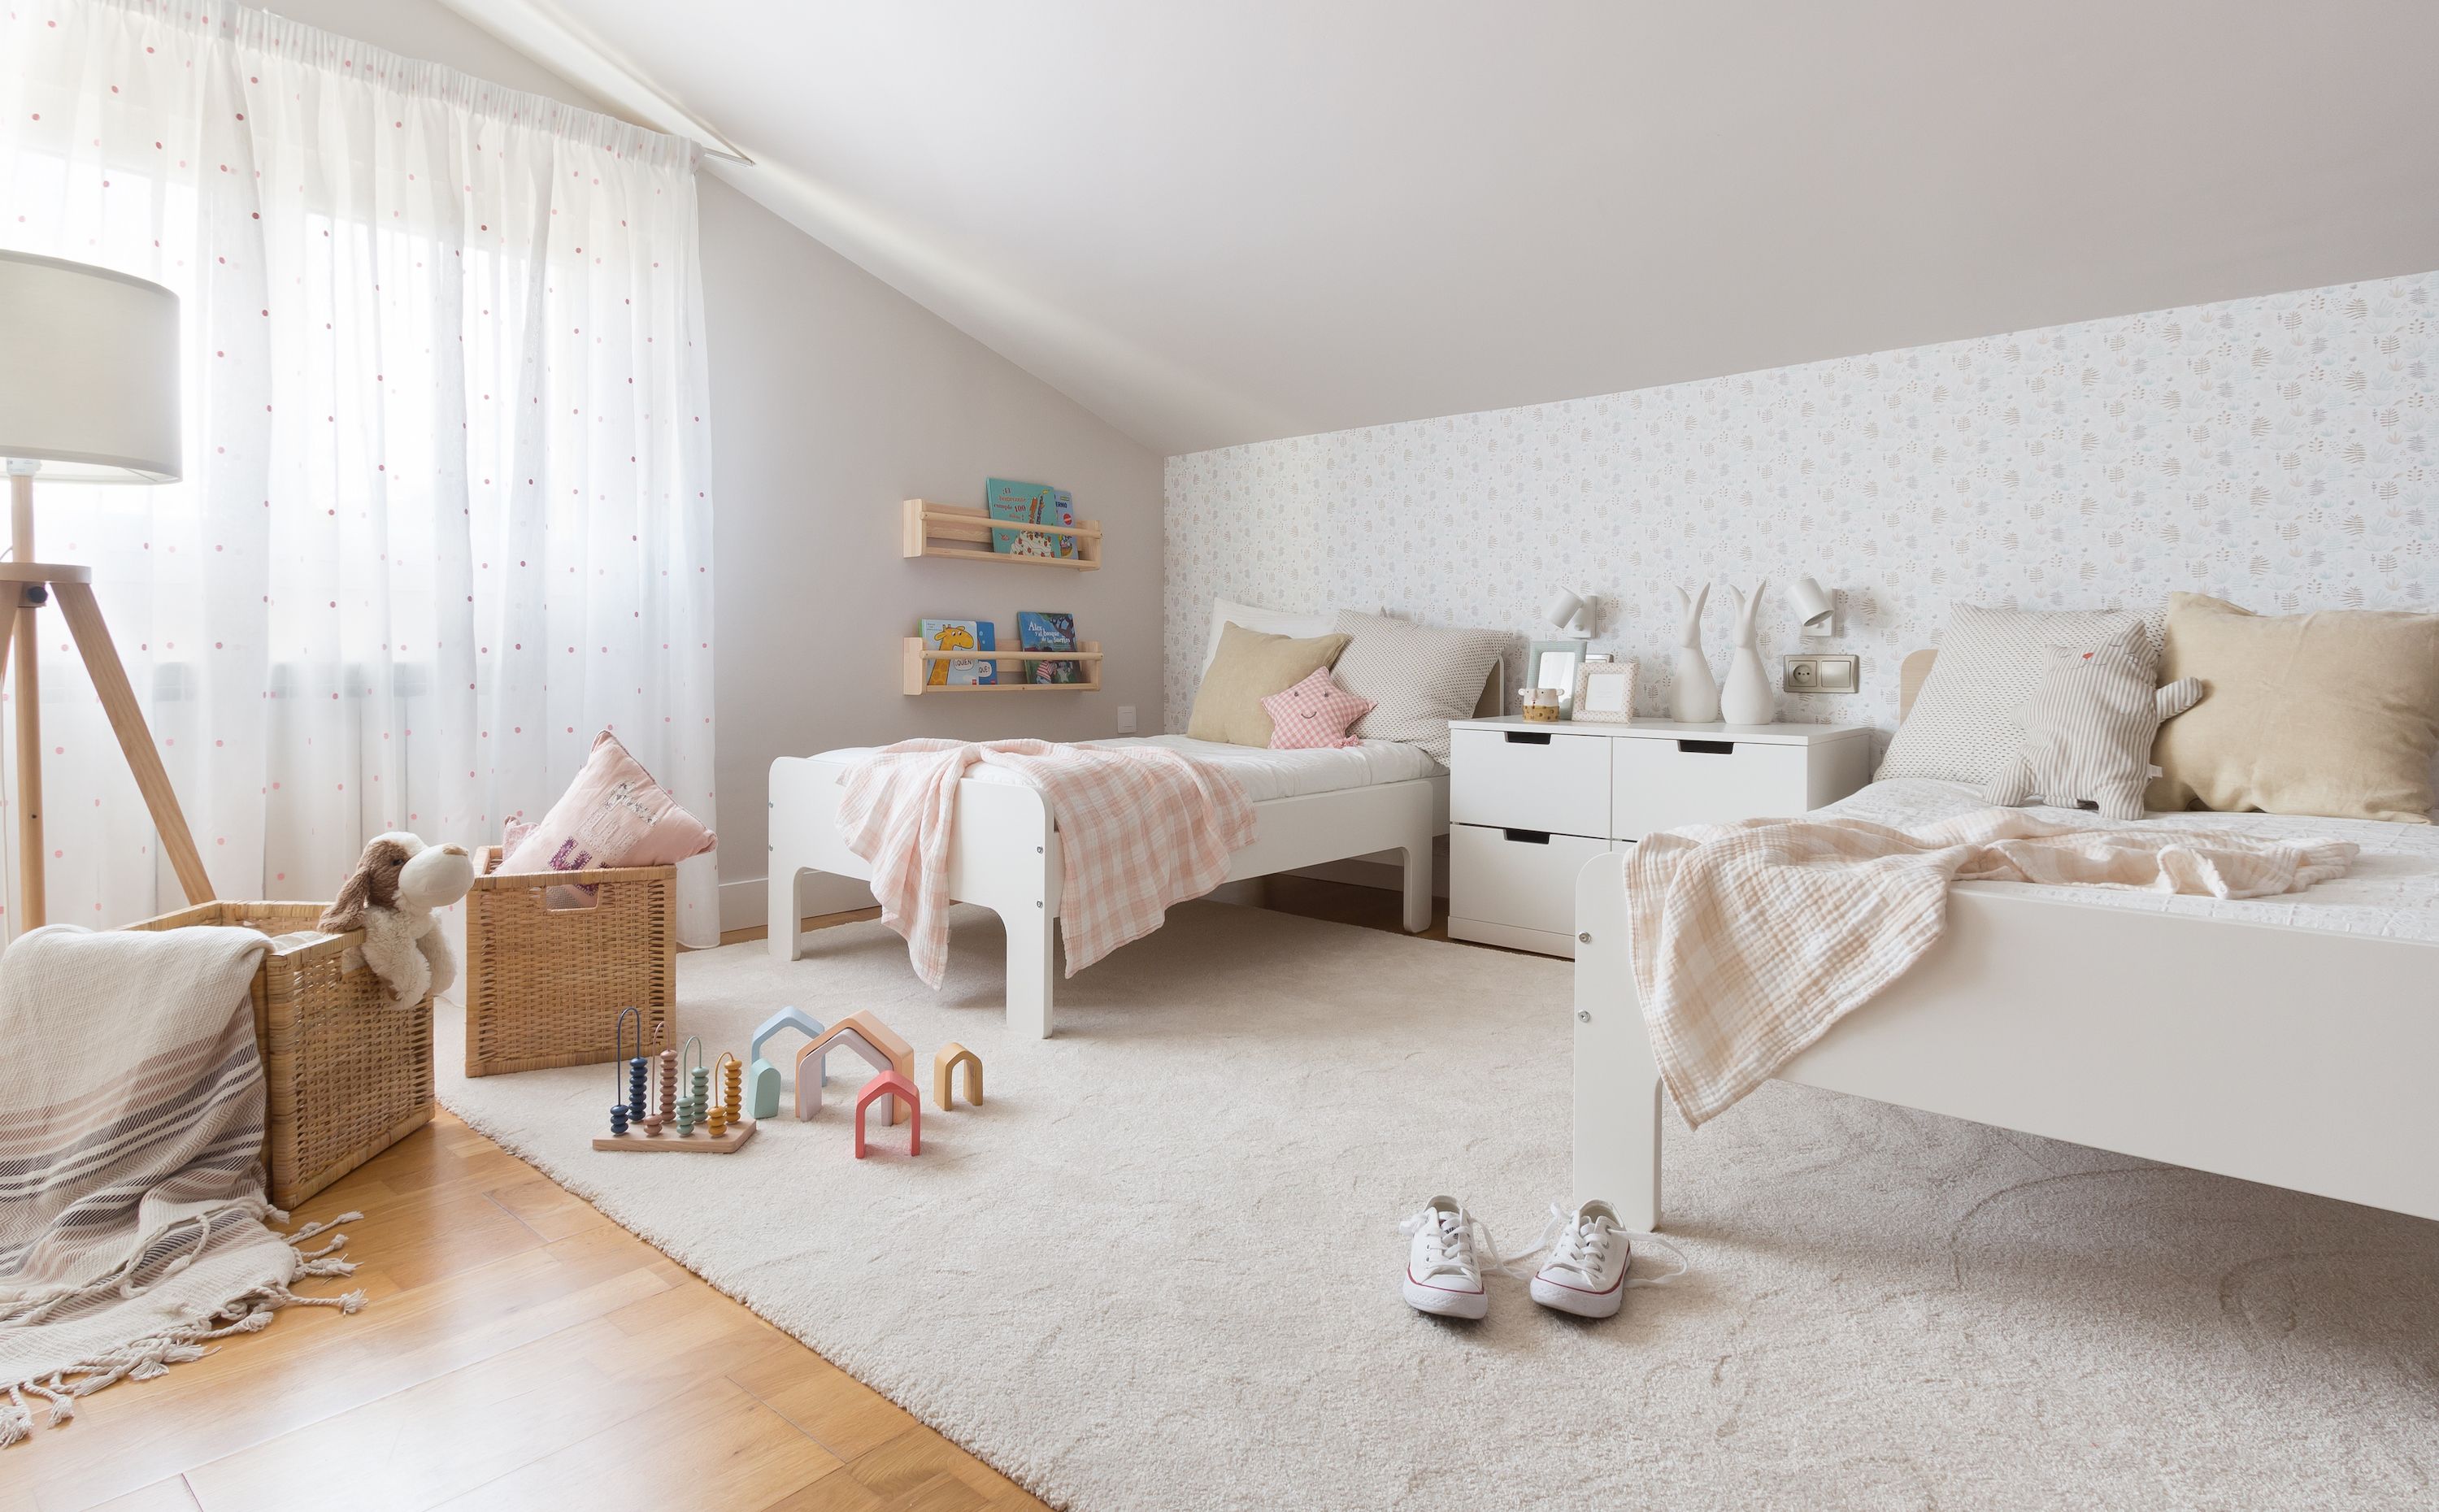 Habitaciones infantiles: Ideas de decoración - ElMueble